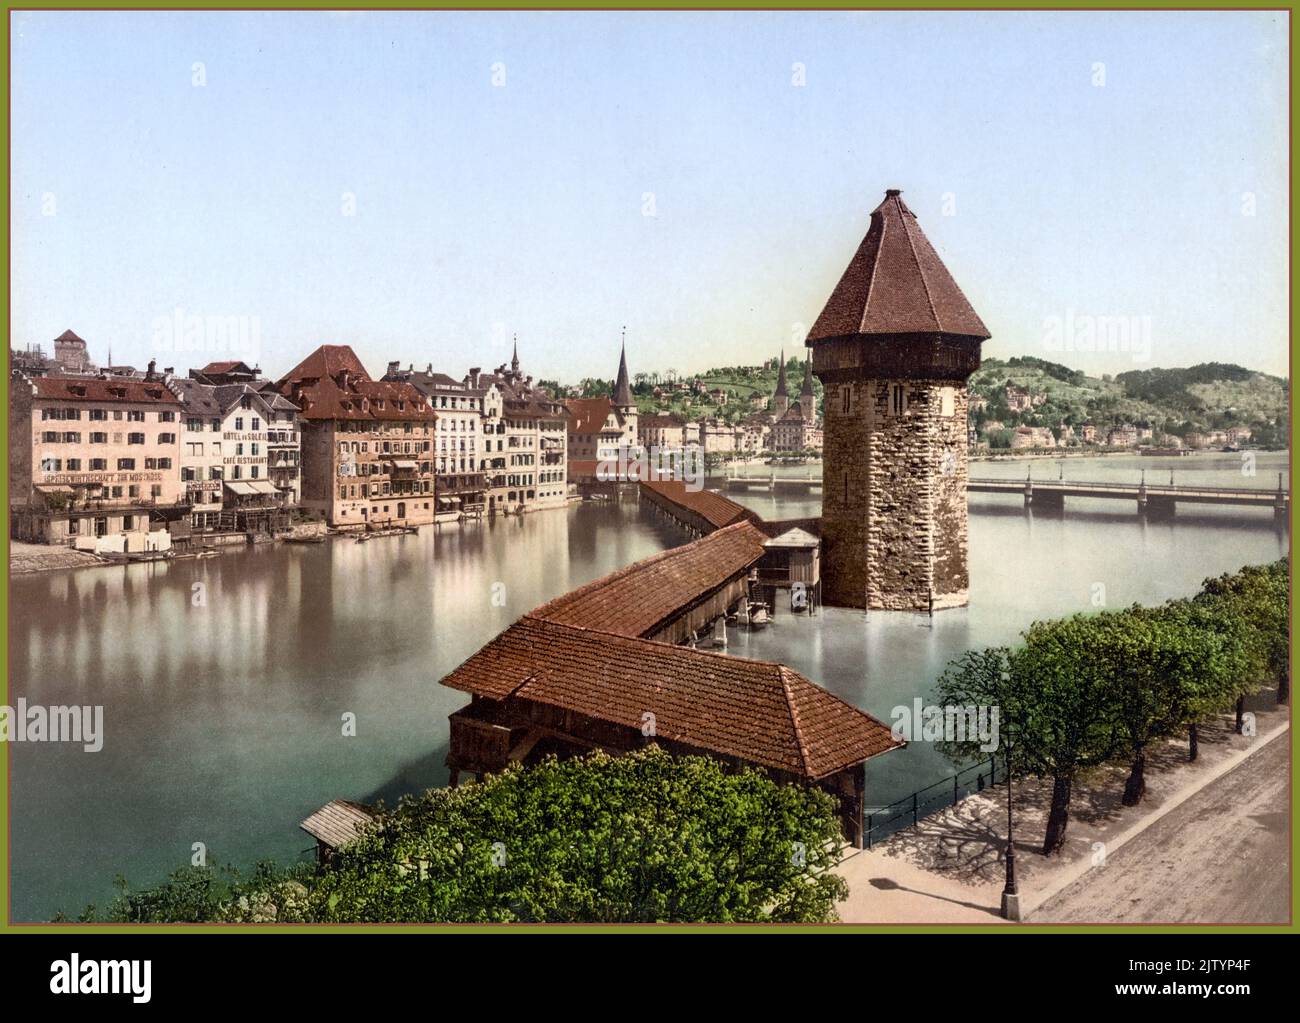 LUCERNE Vintage Photochrom Travel Image 1900s Chapel Bridge Kapellbrücke and Water Tower Wasserturm, Lucerne, Switzerland Photochrom Stock Photo